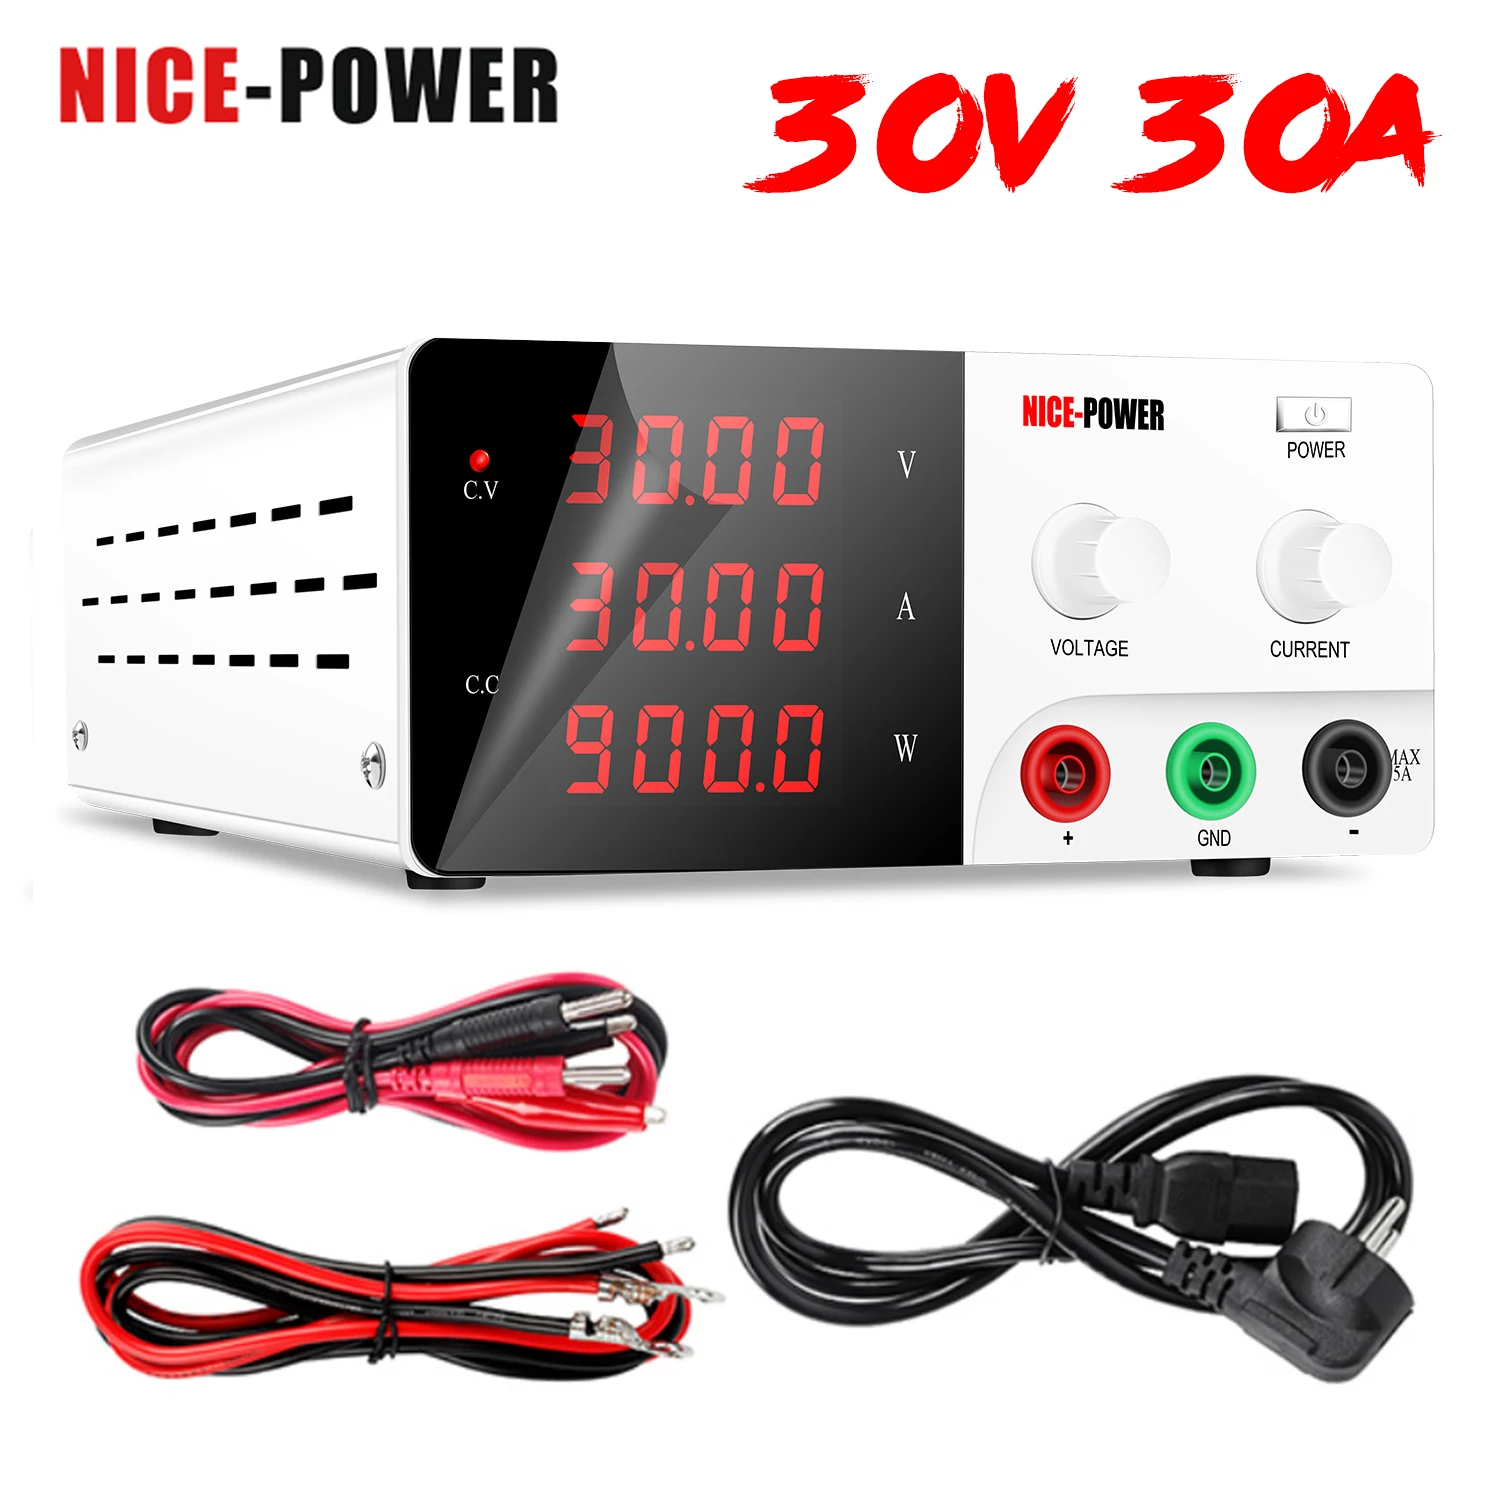 NICE-POWER-fuente de alimentación de laboratorio, estabilizador de corriente, regulador de voltaje Digital, 30V, 30A, CC, ajustable, USB, 900W